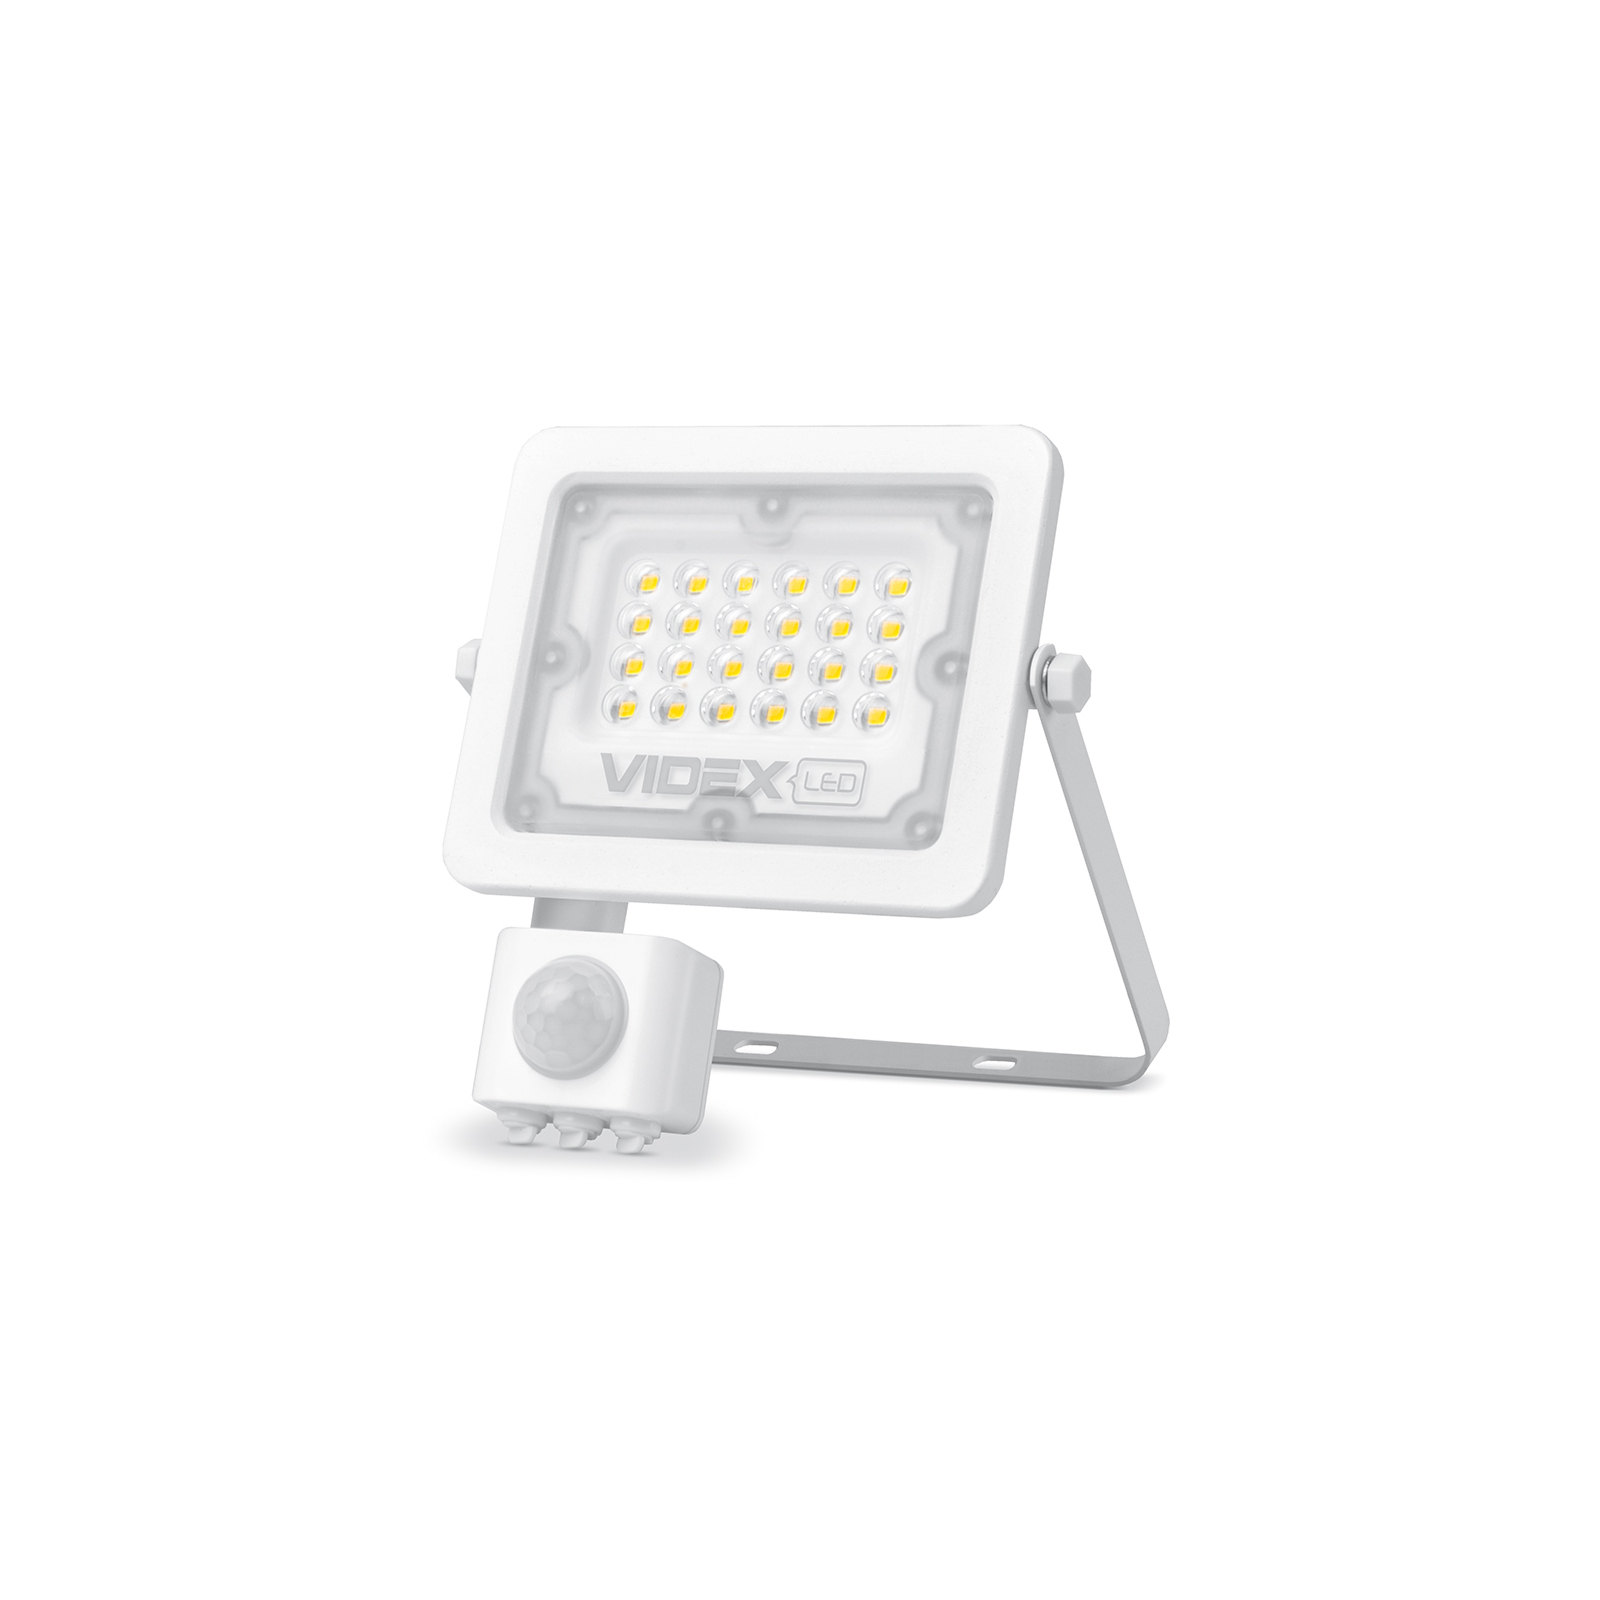 Прожектор Videx LED F2e 20W 5000K (VL-F2e205W-S) зображення 2